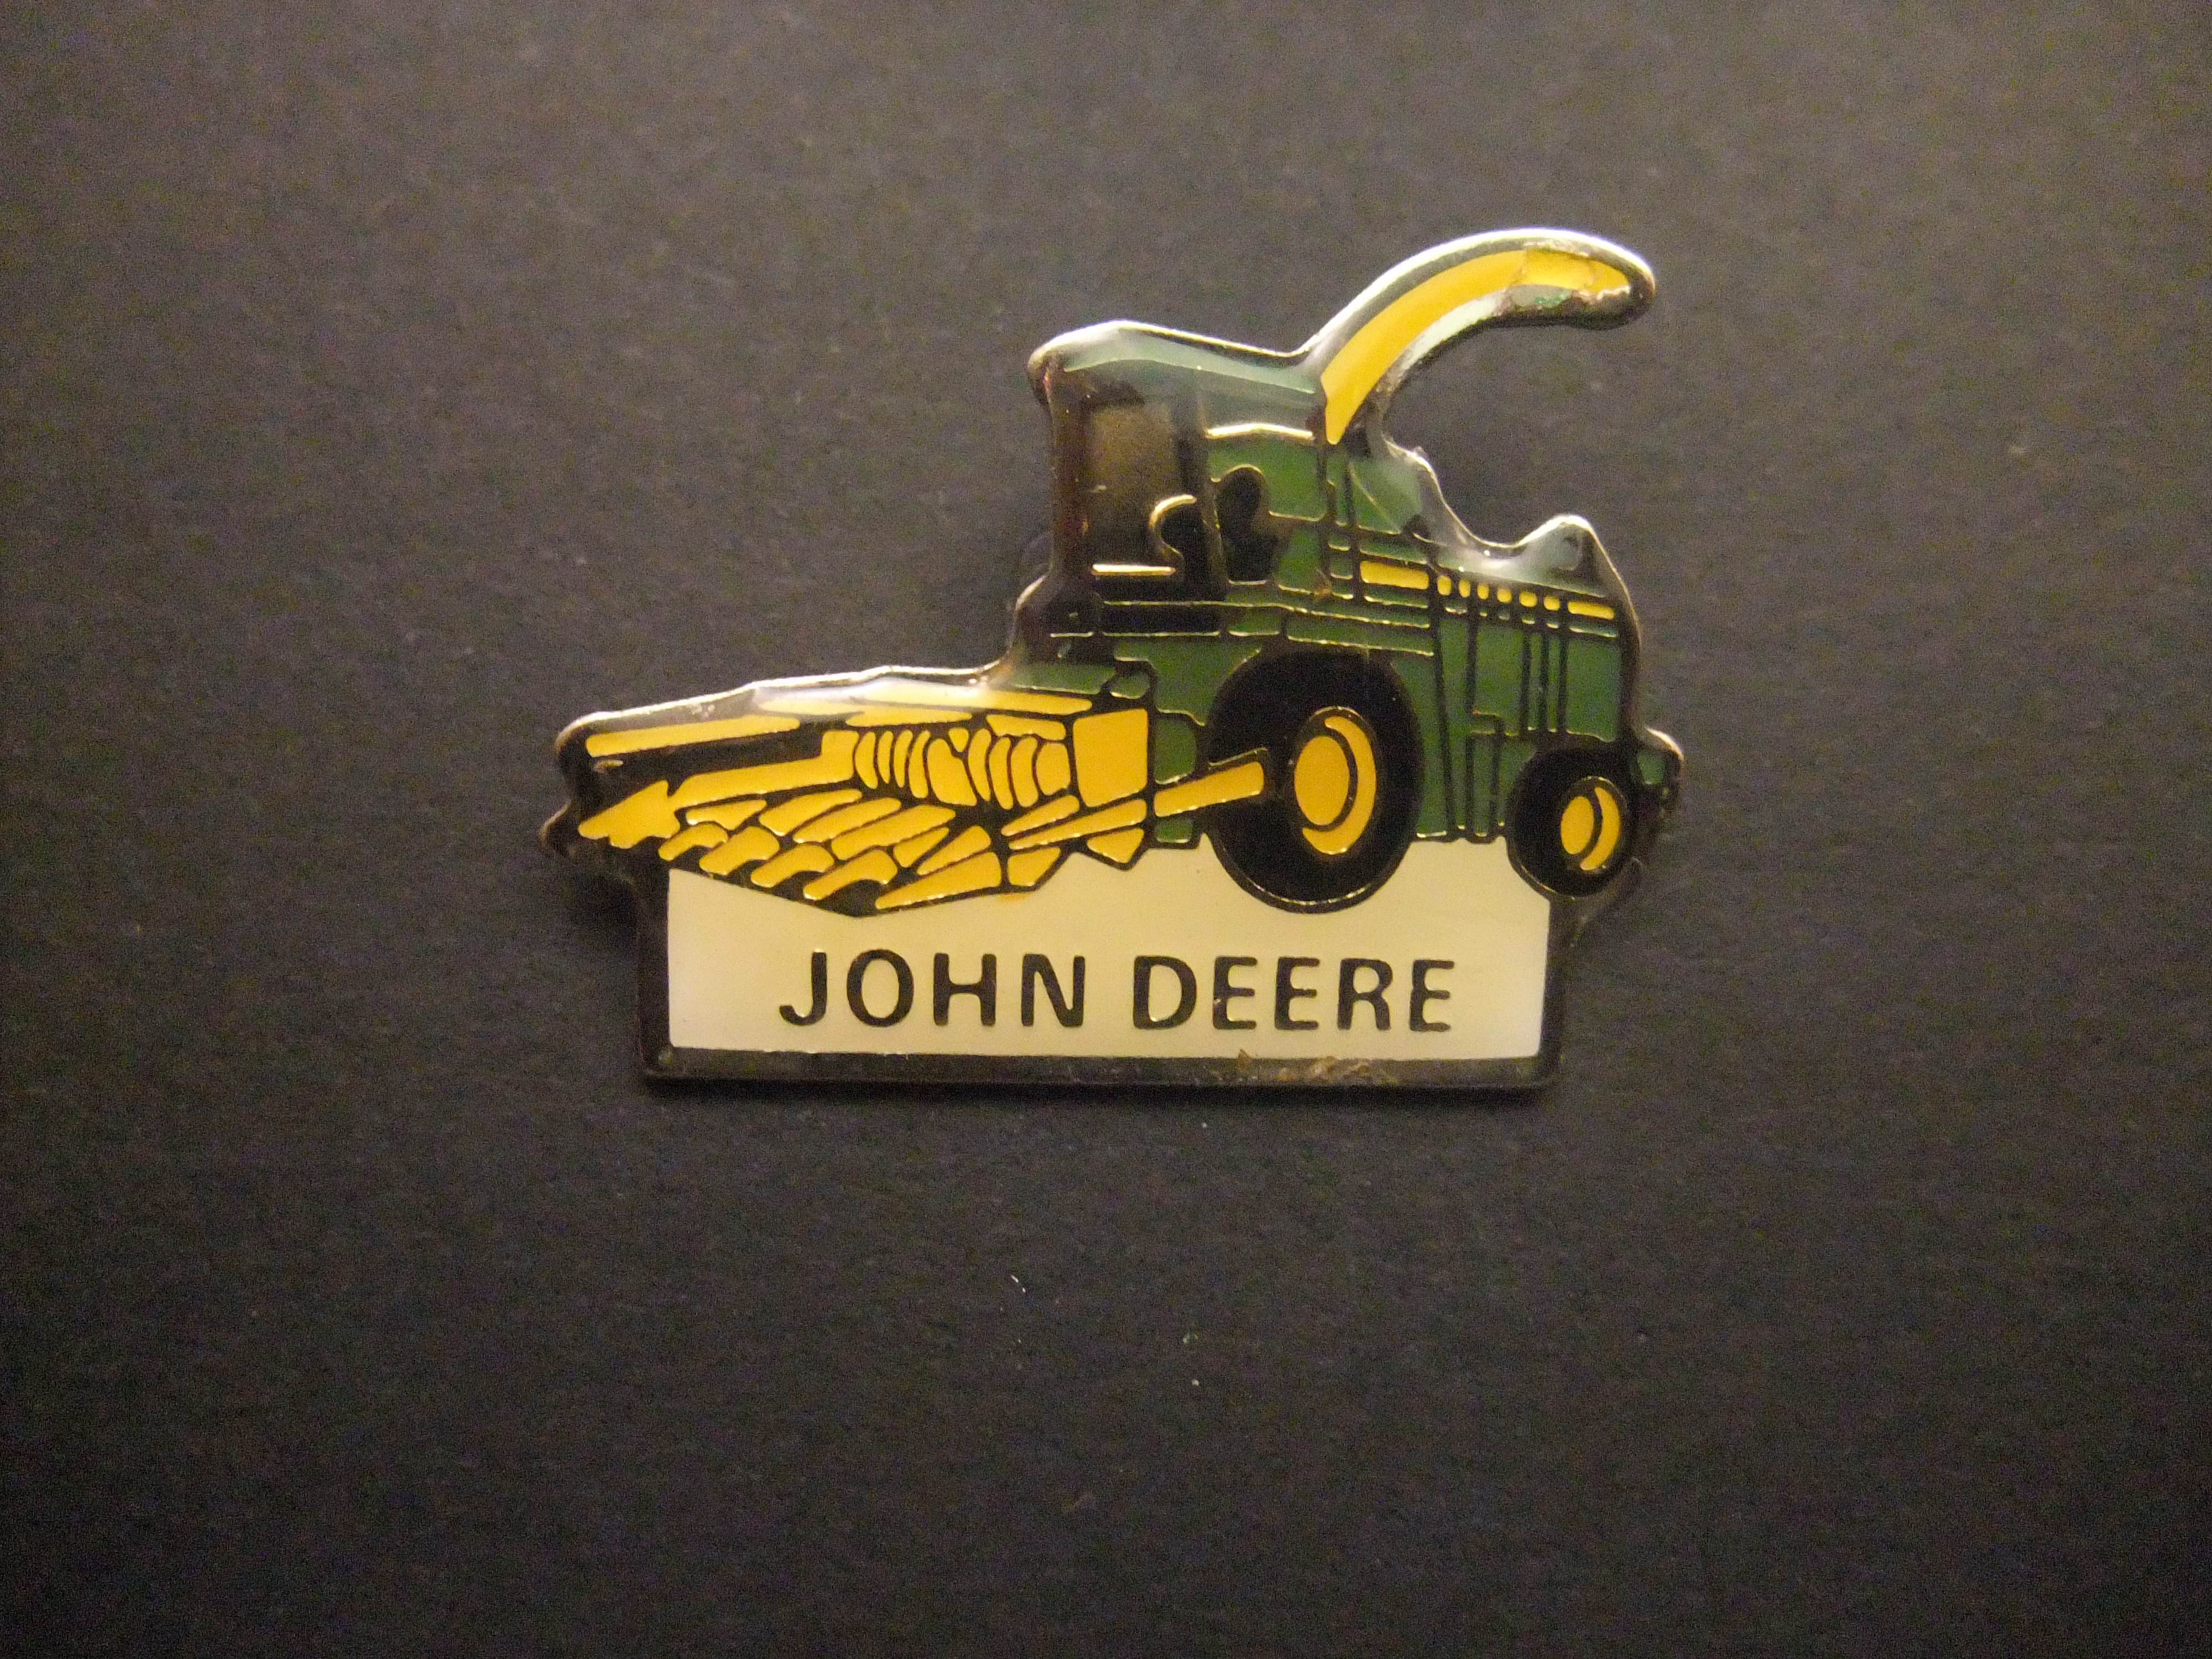 John Deere tractor ( landbouwmachines) met ploeg